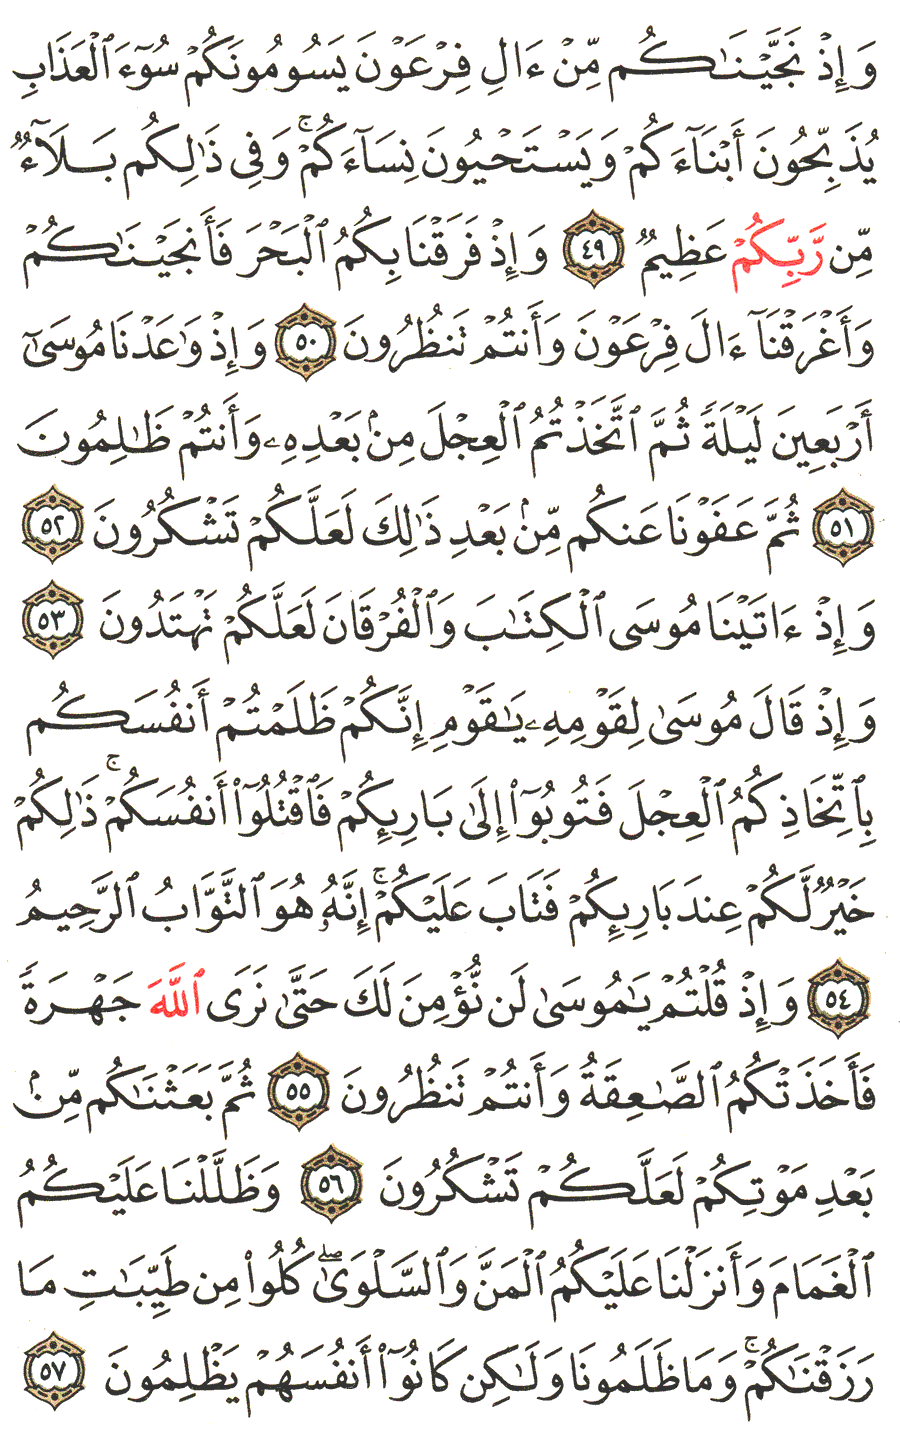 الصفحة رقم  8 من القرآن الكريم مكتوبة من المصحف